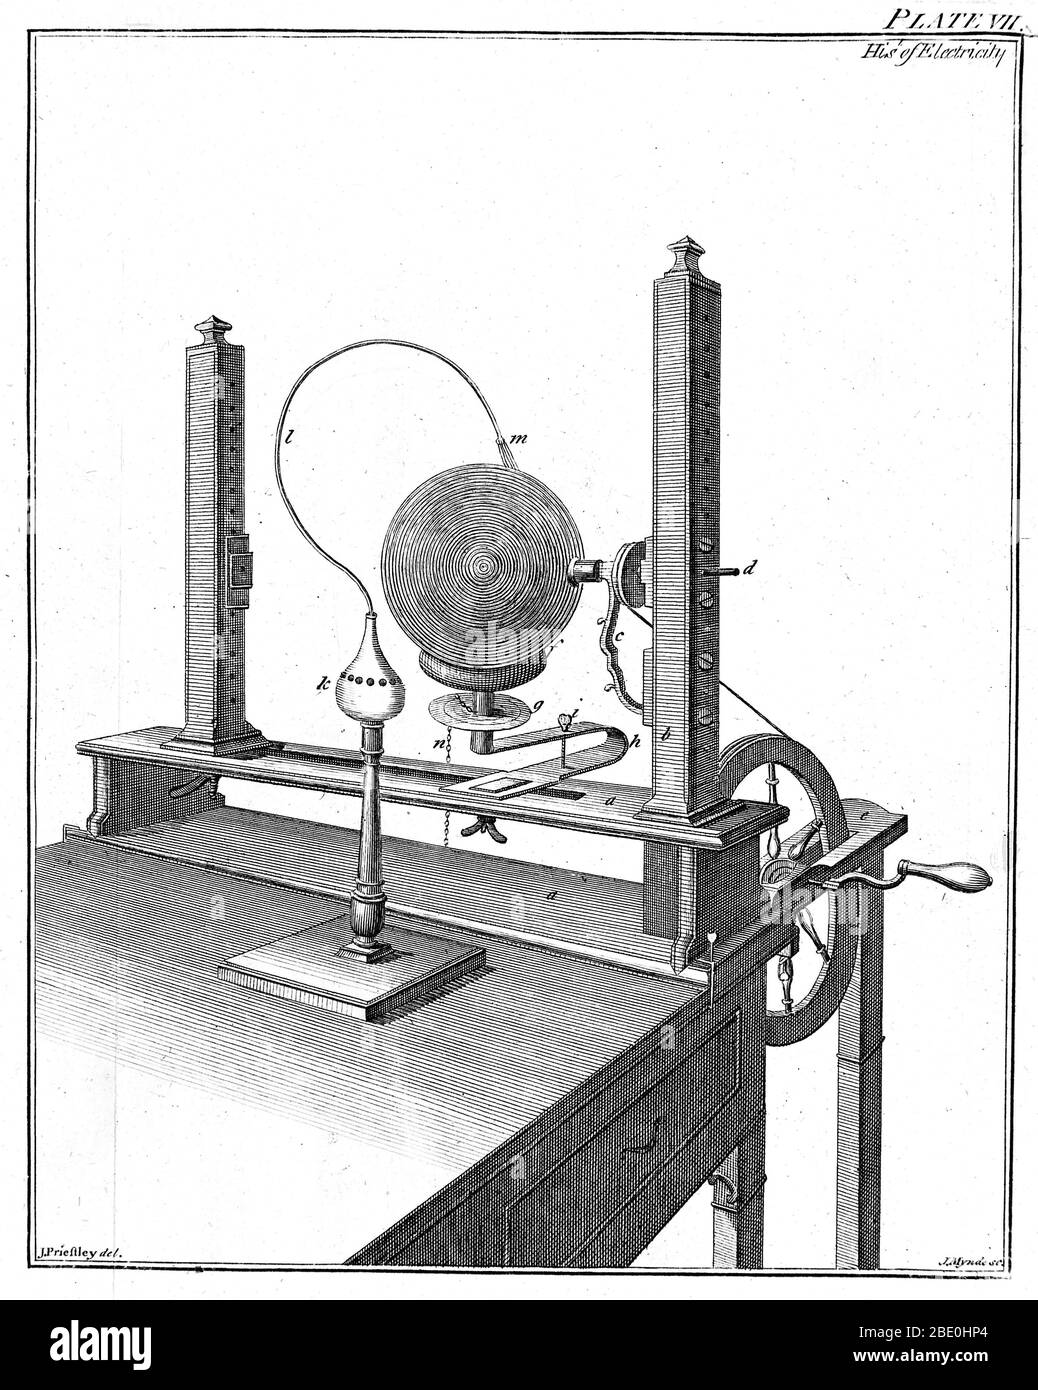 Machine électrostatique utilisée par Joseph Priestley, 1775. La boule en verre (en haut à droite) a été tournée par la poignée contre un « caoutchouc » fixe (comme la fourrure) et la charge recueillie par des fils (en haut à droite) balayant le globe. La tension était bientôt suffisamment élevée pour s'étincelle dans l'intervalle (en haut à gauche). Joseph Priestley (1733-1804) était chimiste anglais. Sa recherche scientifique la plus célèbre portait sur la nature et les propriétés des gaz. Grâce à une conception intelligente d'appareils et à une manipulation minutieuse, Priestley a isolé et caractérisé huit gaz, y compris l'oxygène, et hors de ce travail a émergé son plus important scientifique Banque D'Images